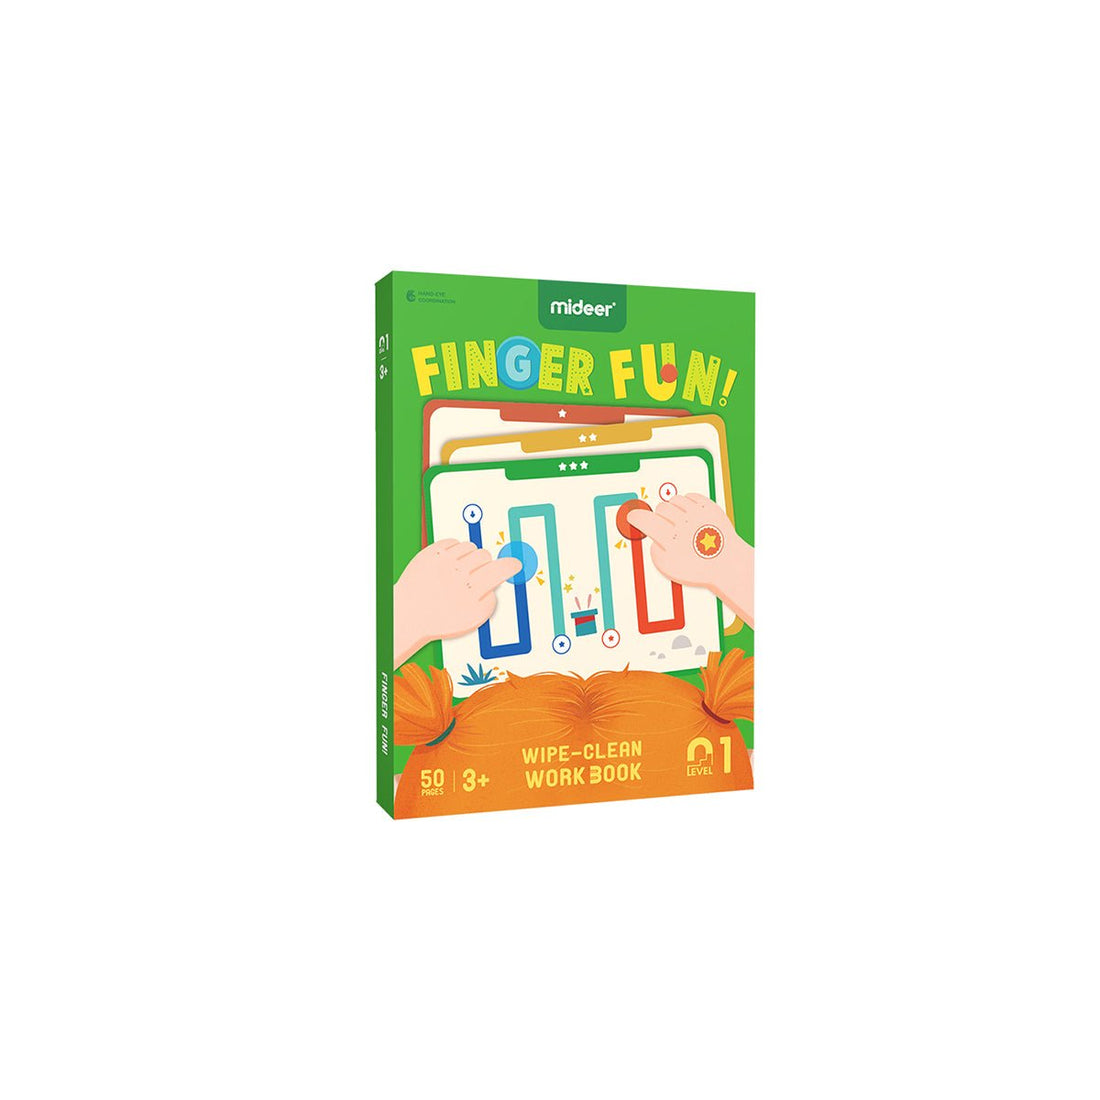 Finger Fun Wipe-clean Work Book - 0cm